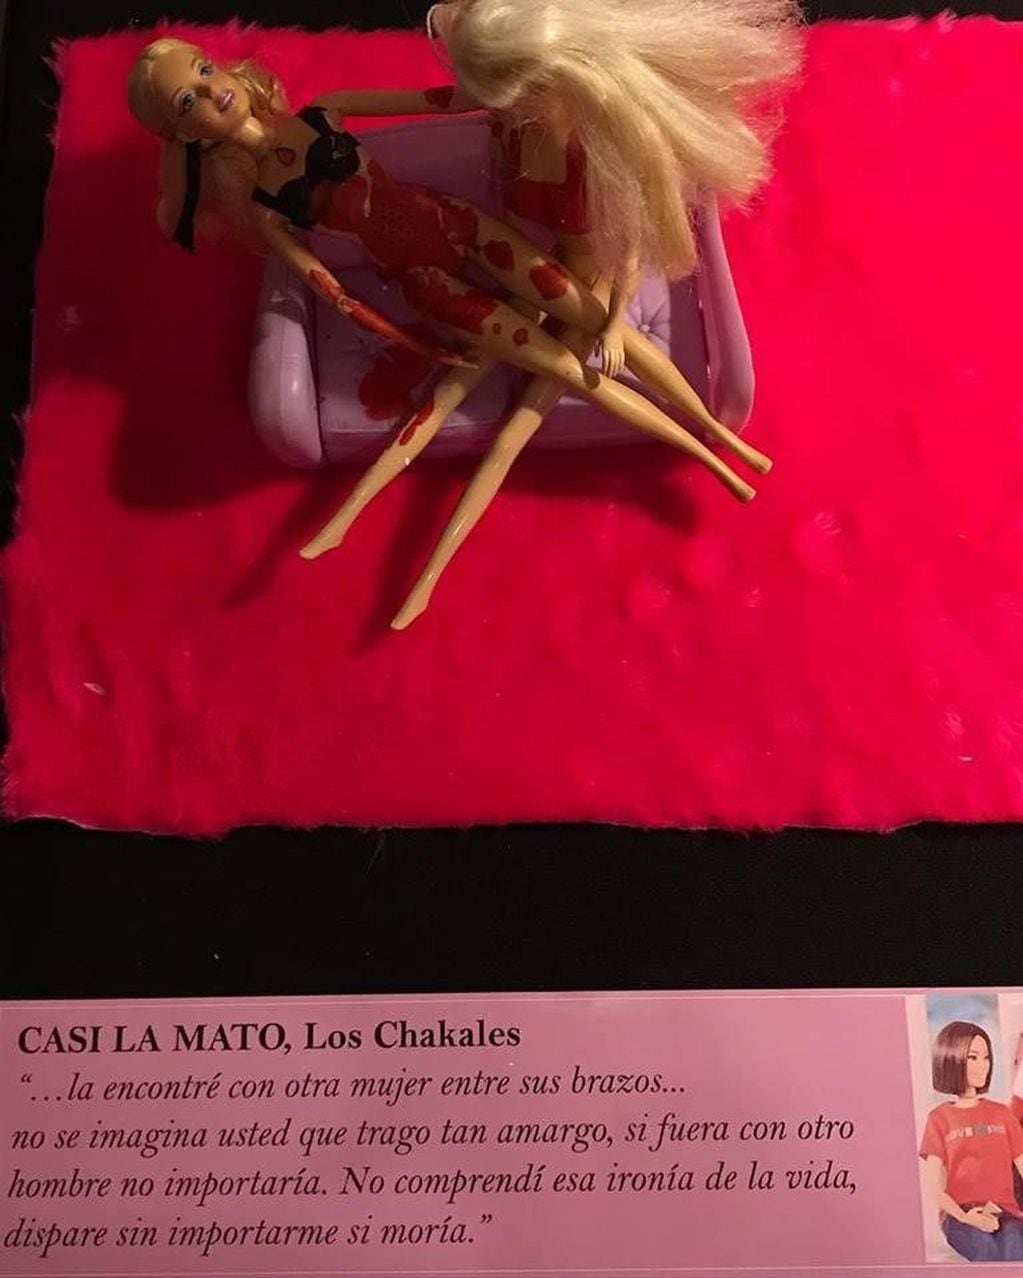 "Casi la mato" de Los Chakales representada con dos muñecas Barbie (Facebook)